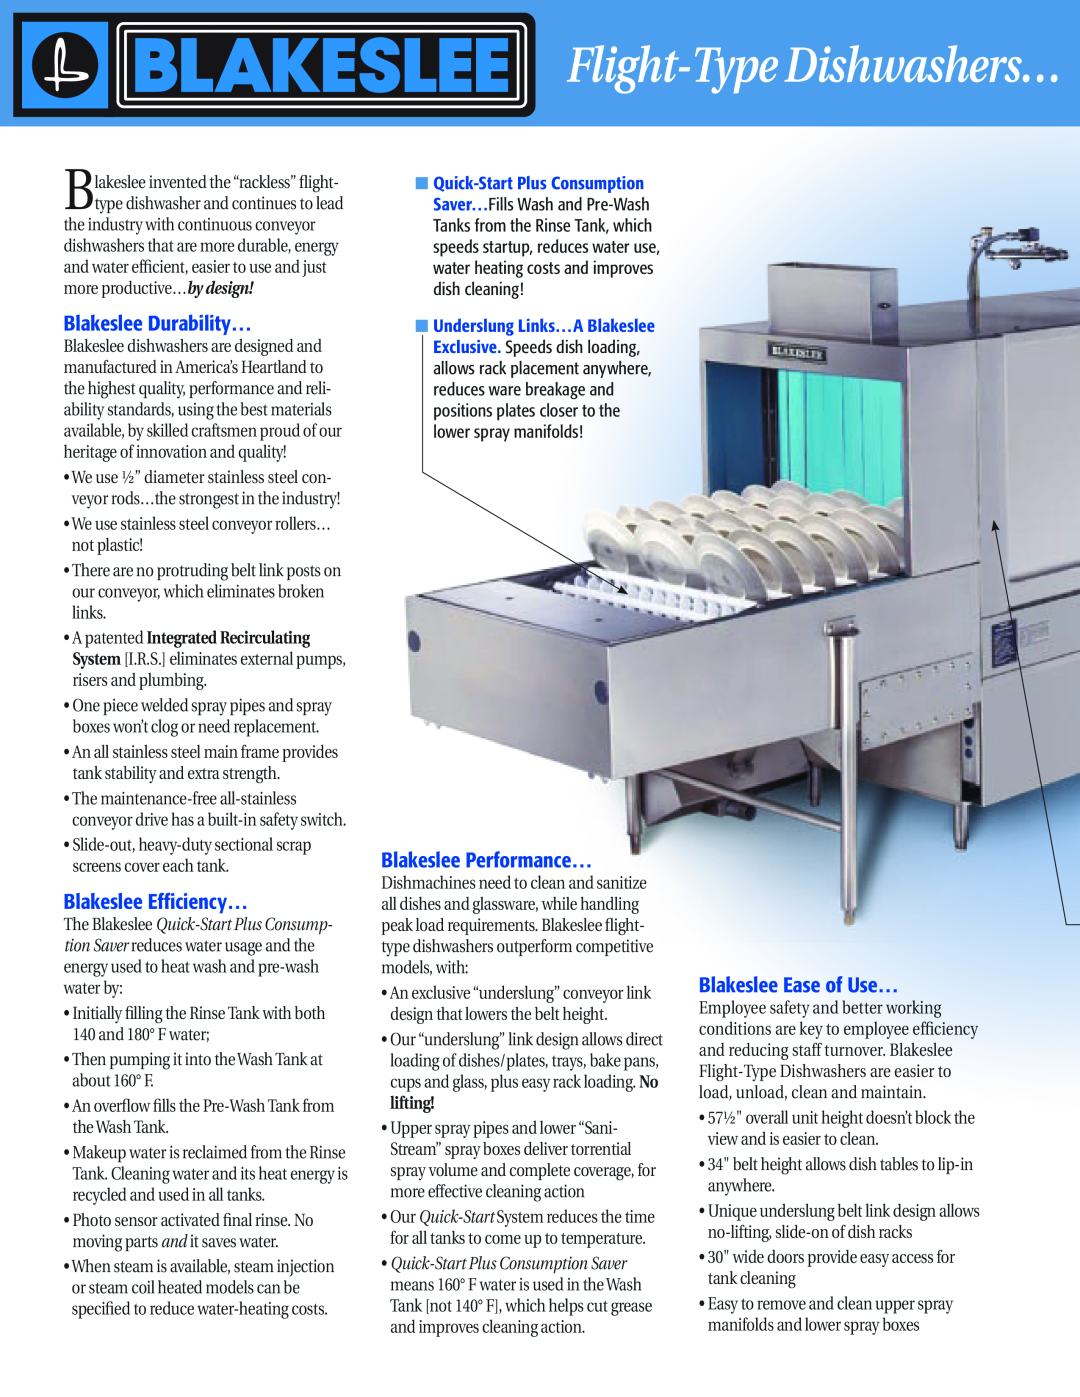 Blakeslee Dishwashing & Kitchen Equipment manual Blakeslee Durability…, Blakeslee Efficiency…, Blakeslee Performance… 